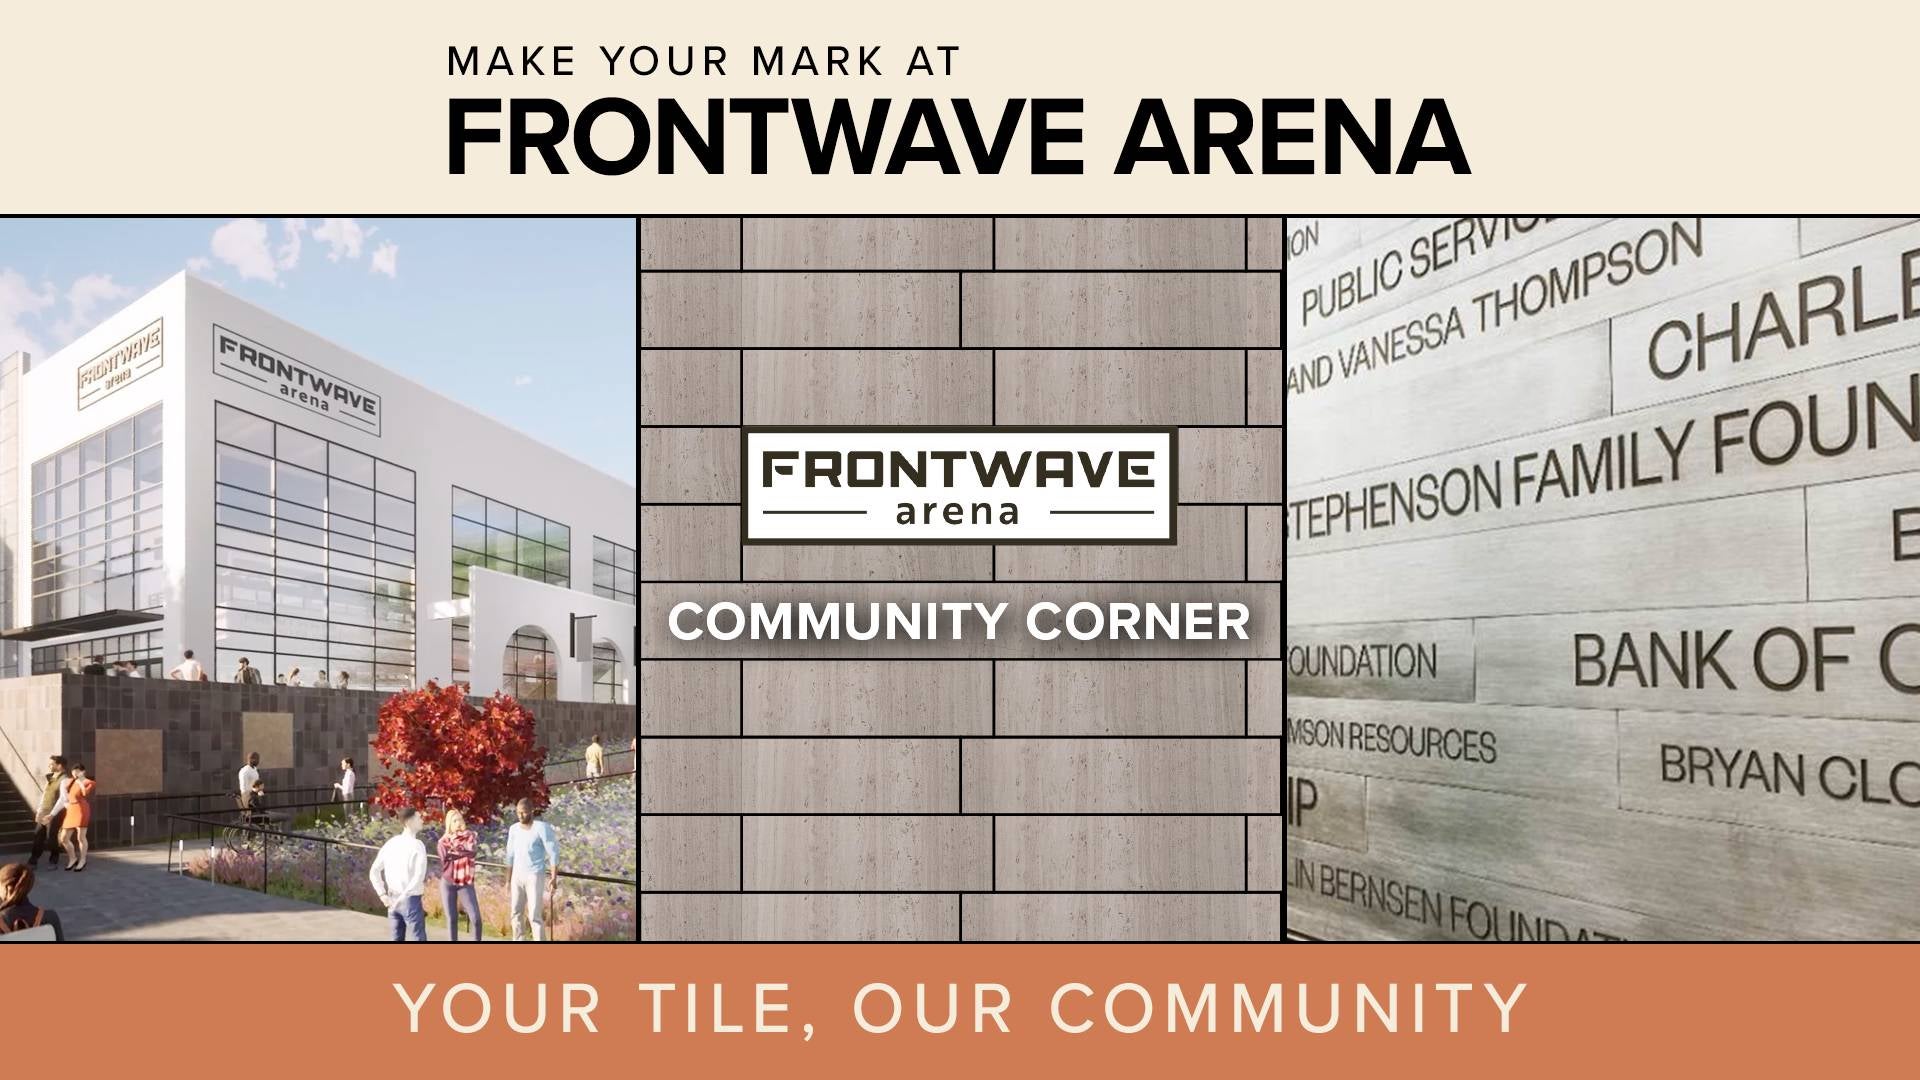 Make your mark at Frontwave Arena's Community Corner.